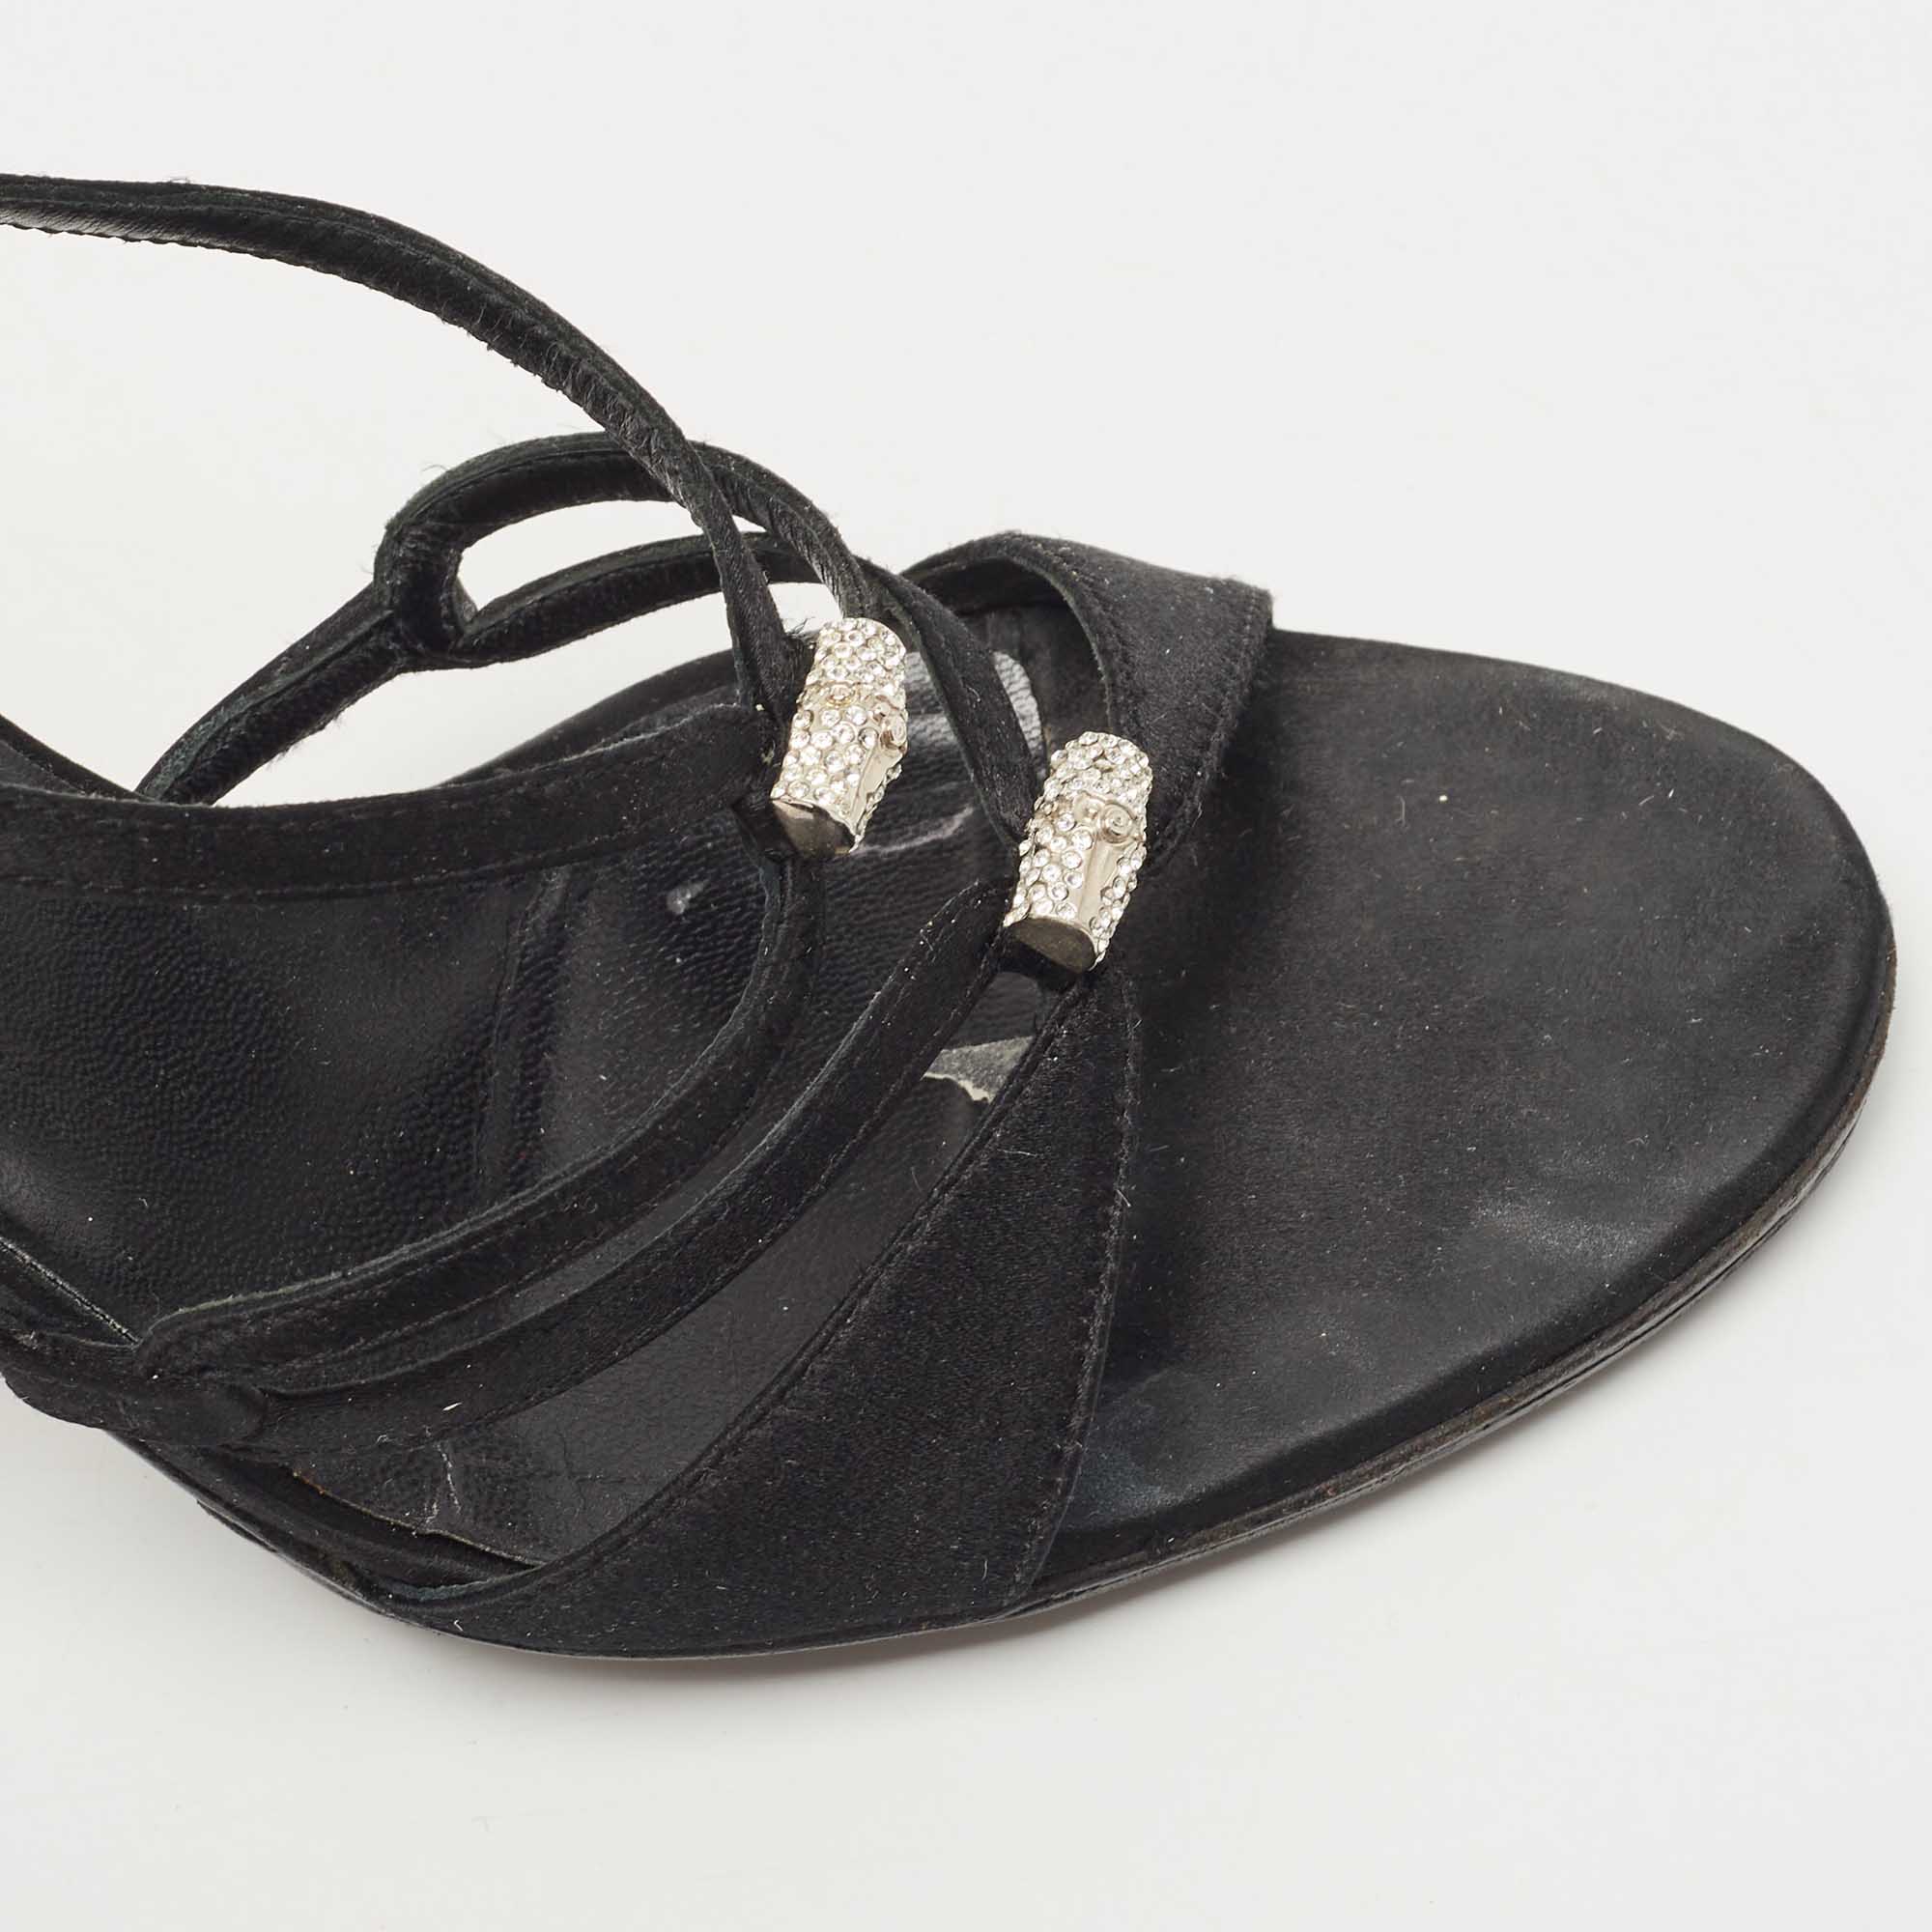 Gucci Black Satin Strappy Sandals Size 39.5